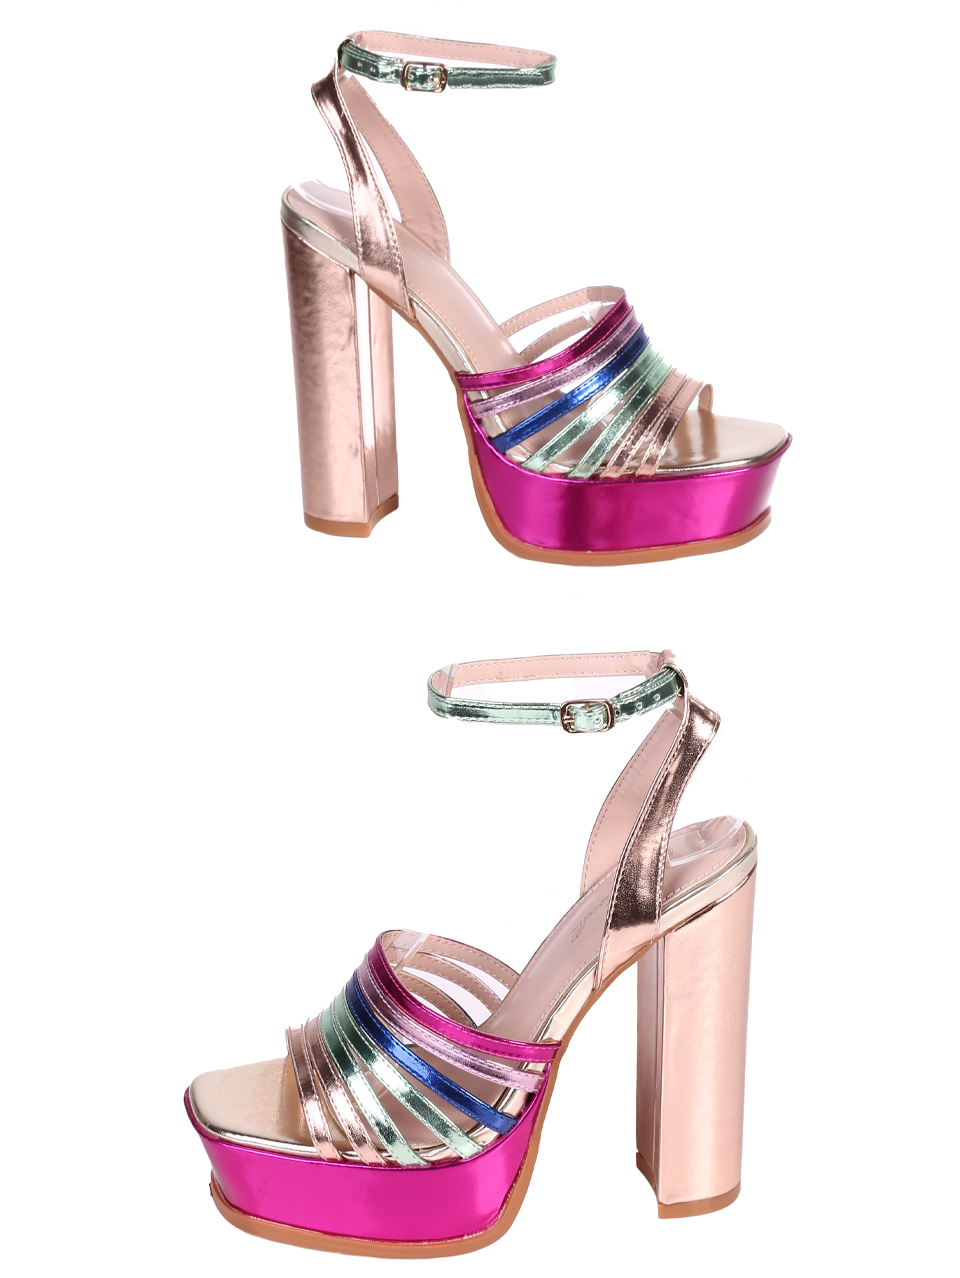 Елегантни дамски сандали в златист/розов цвят 4M-24032 mix